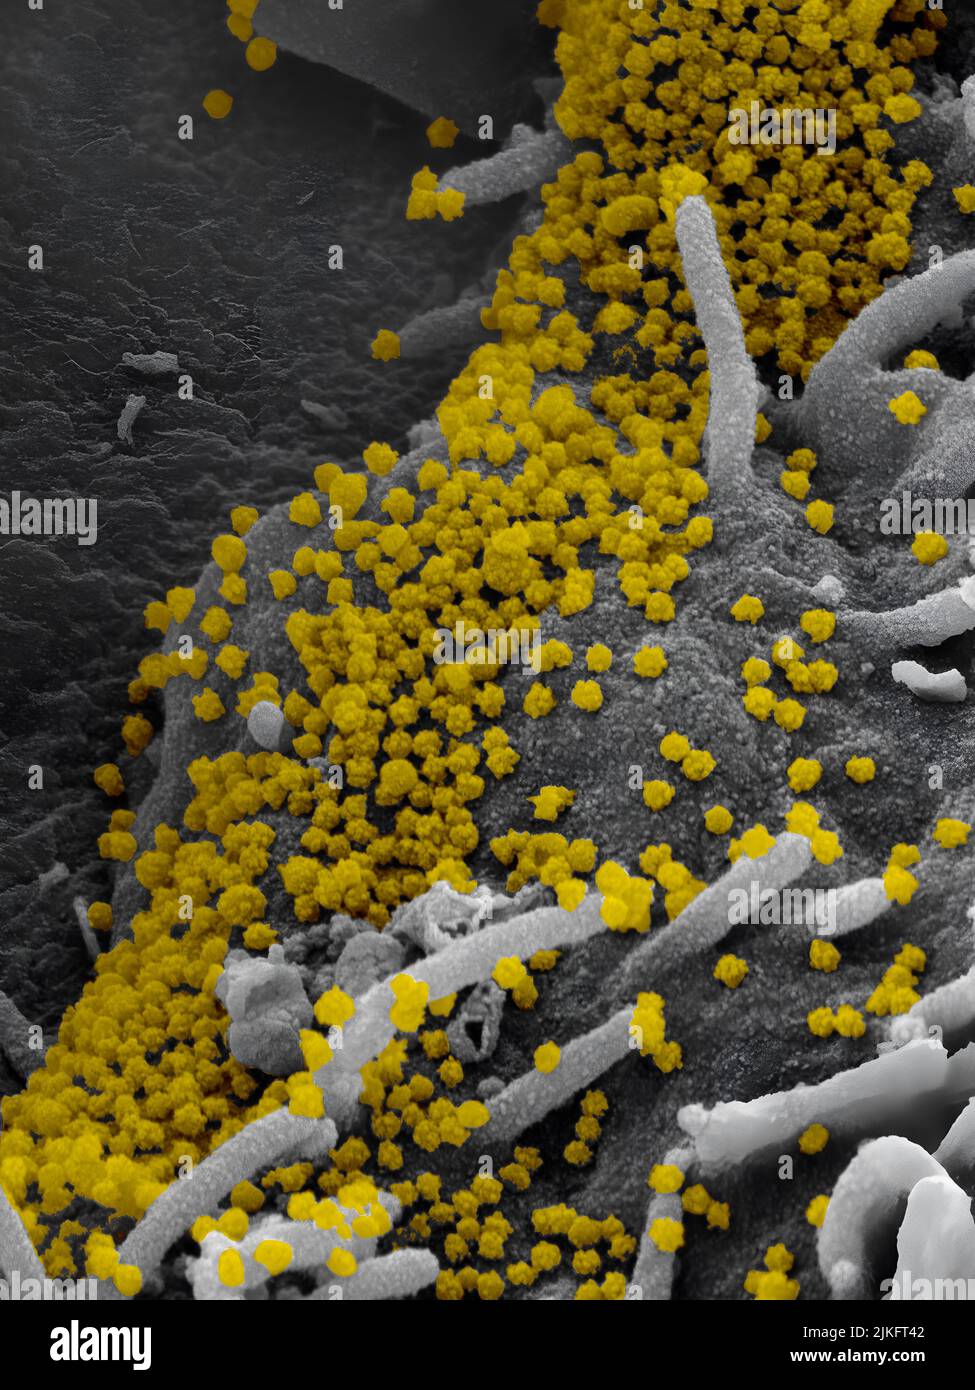 Micrografía electrónica de HERDS marcados con oro coloidal que indican